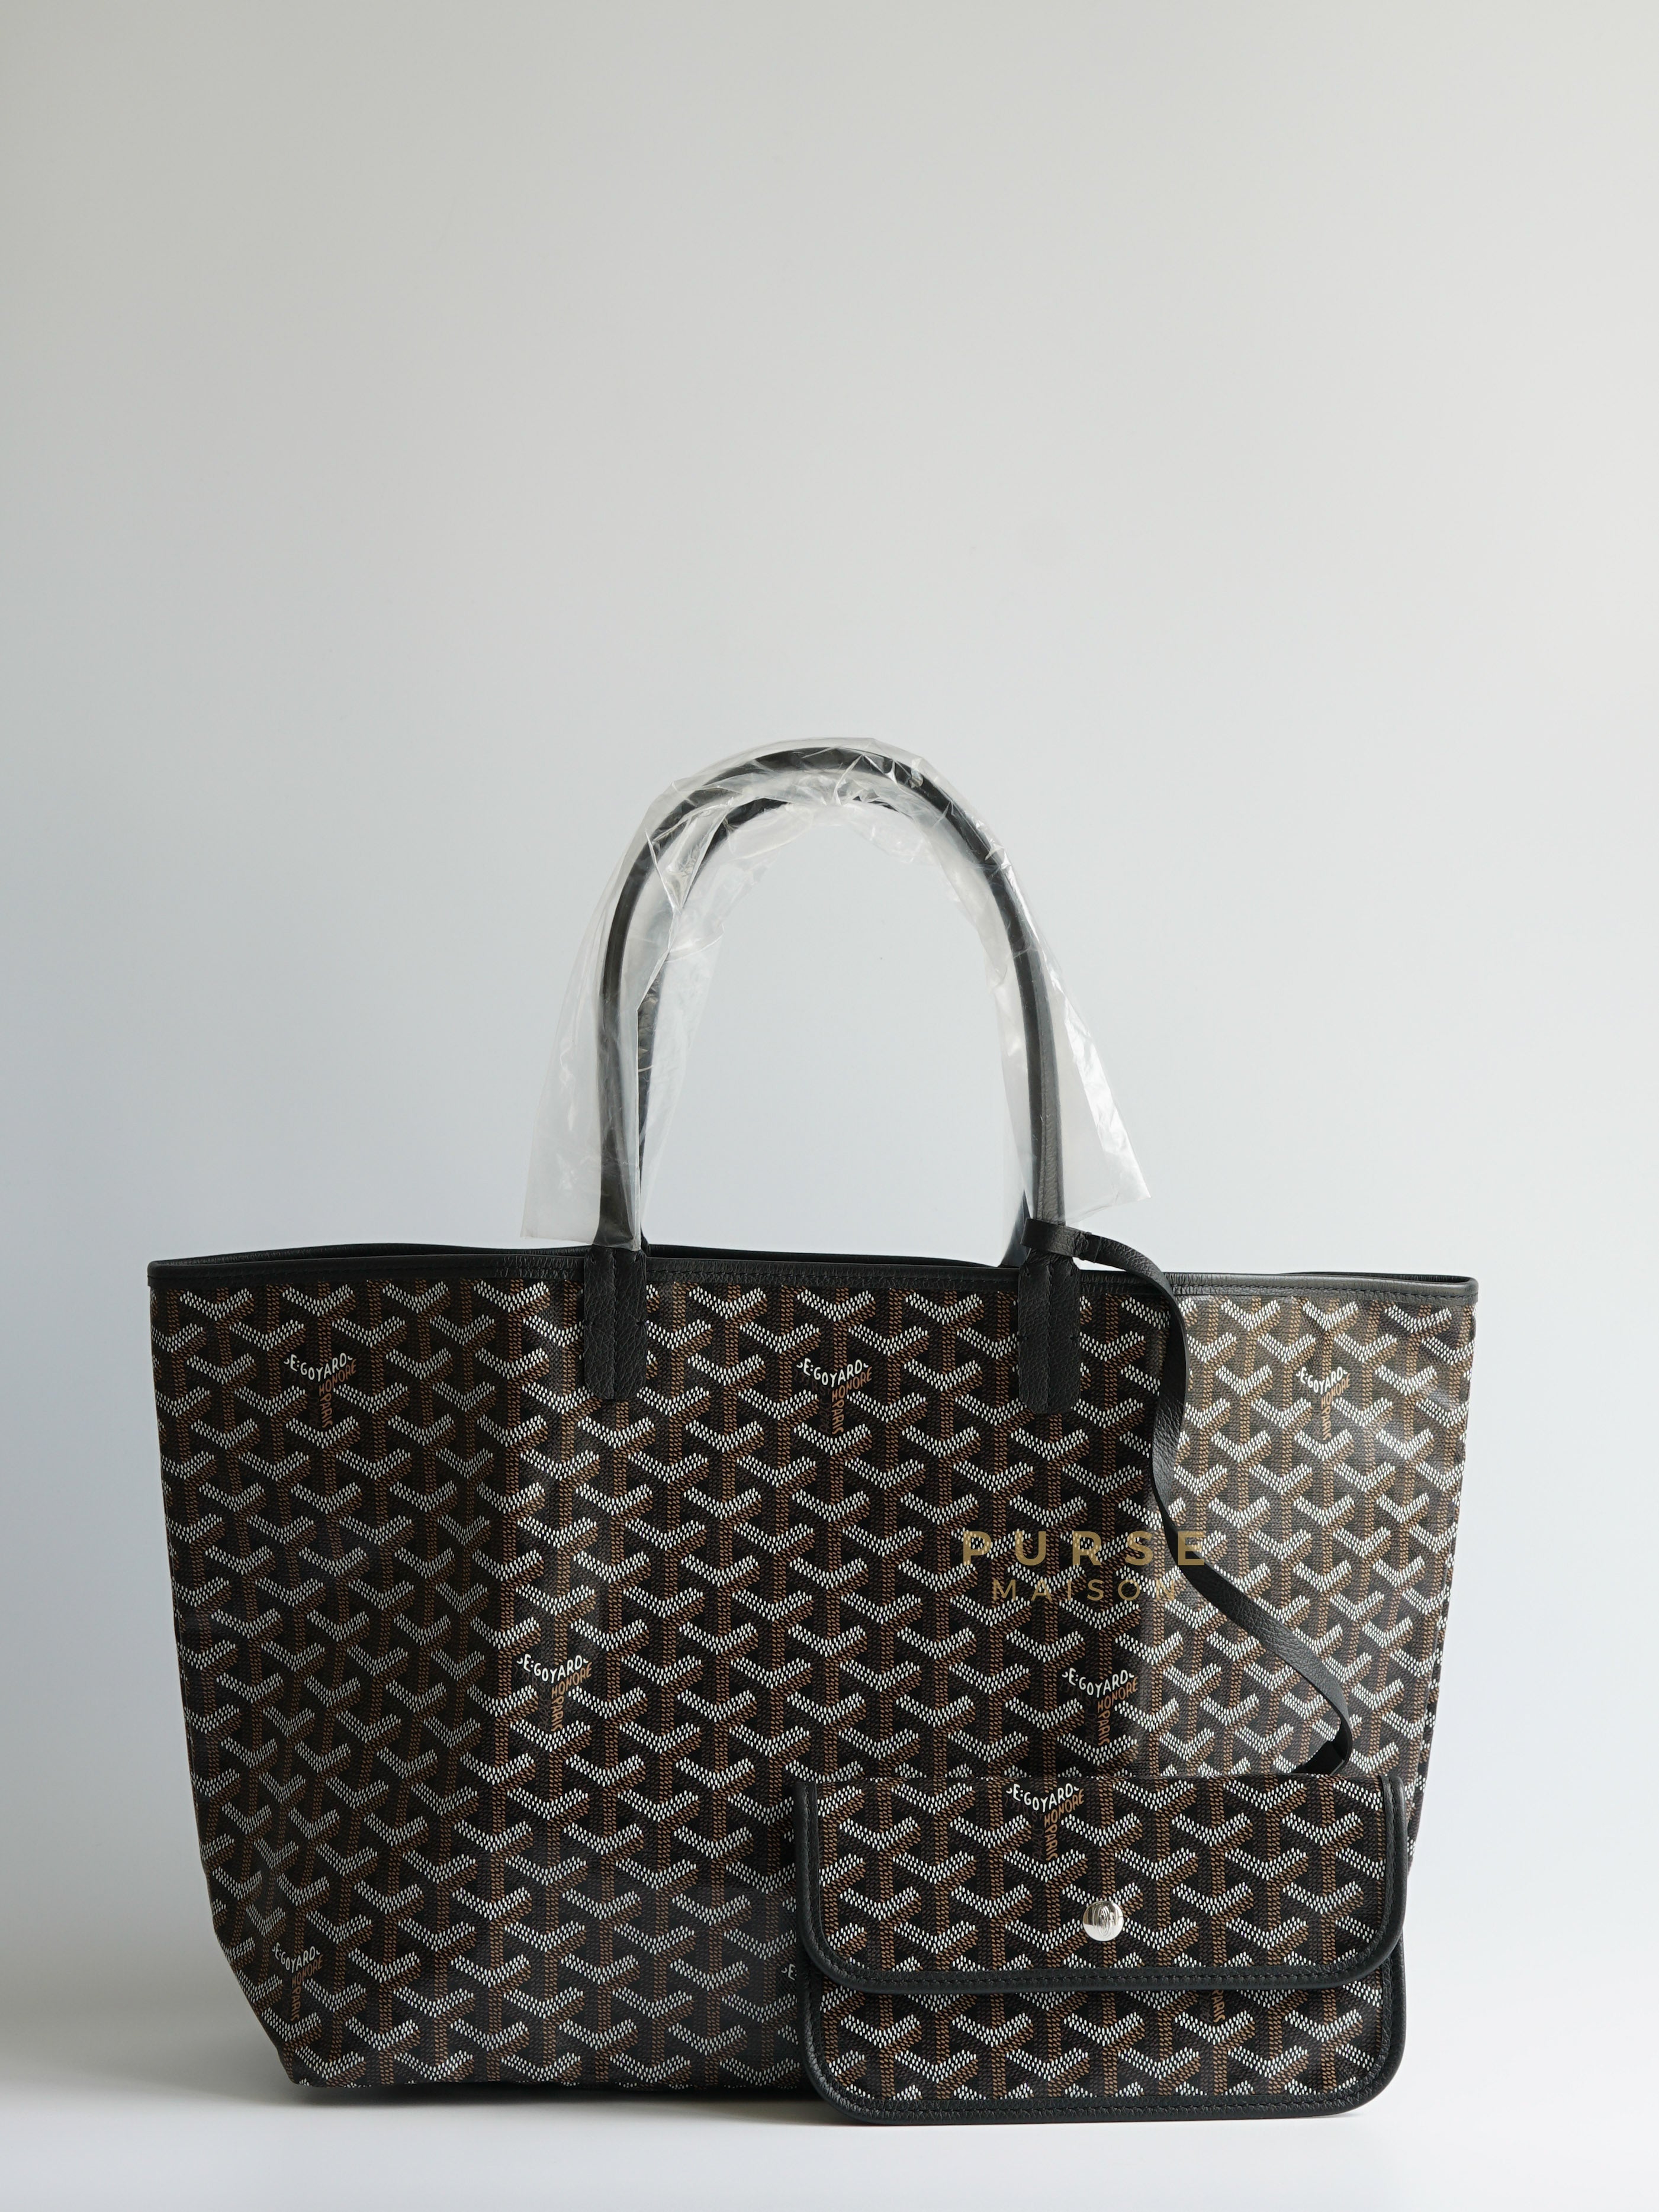 Sac Saint Louis PM Tote Black | Purse Maison Luxury Bags Shop